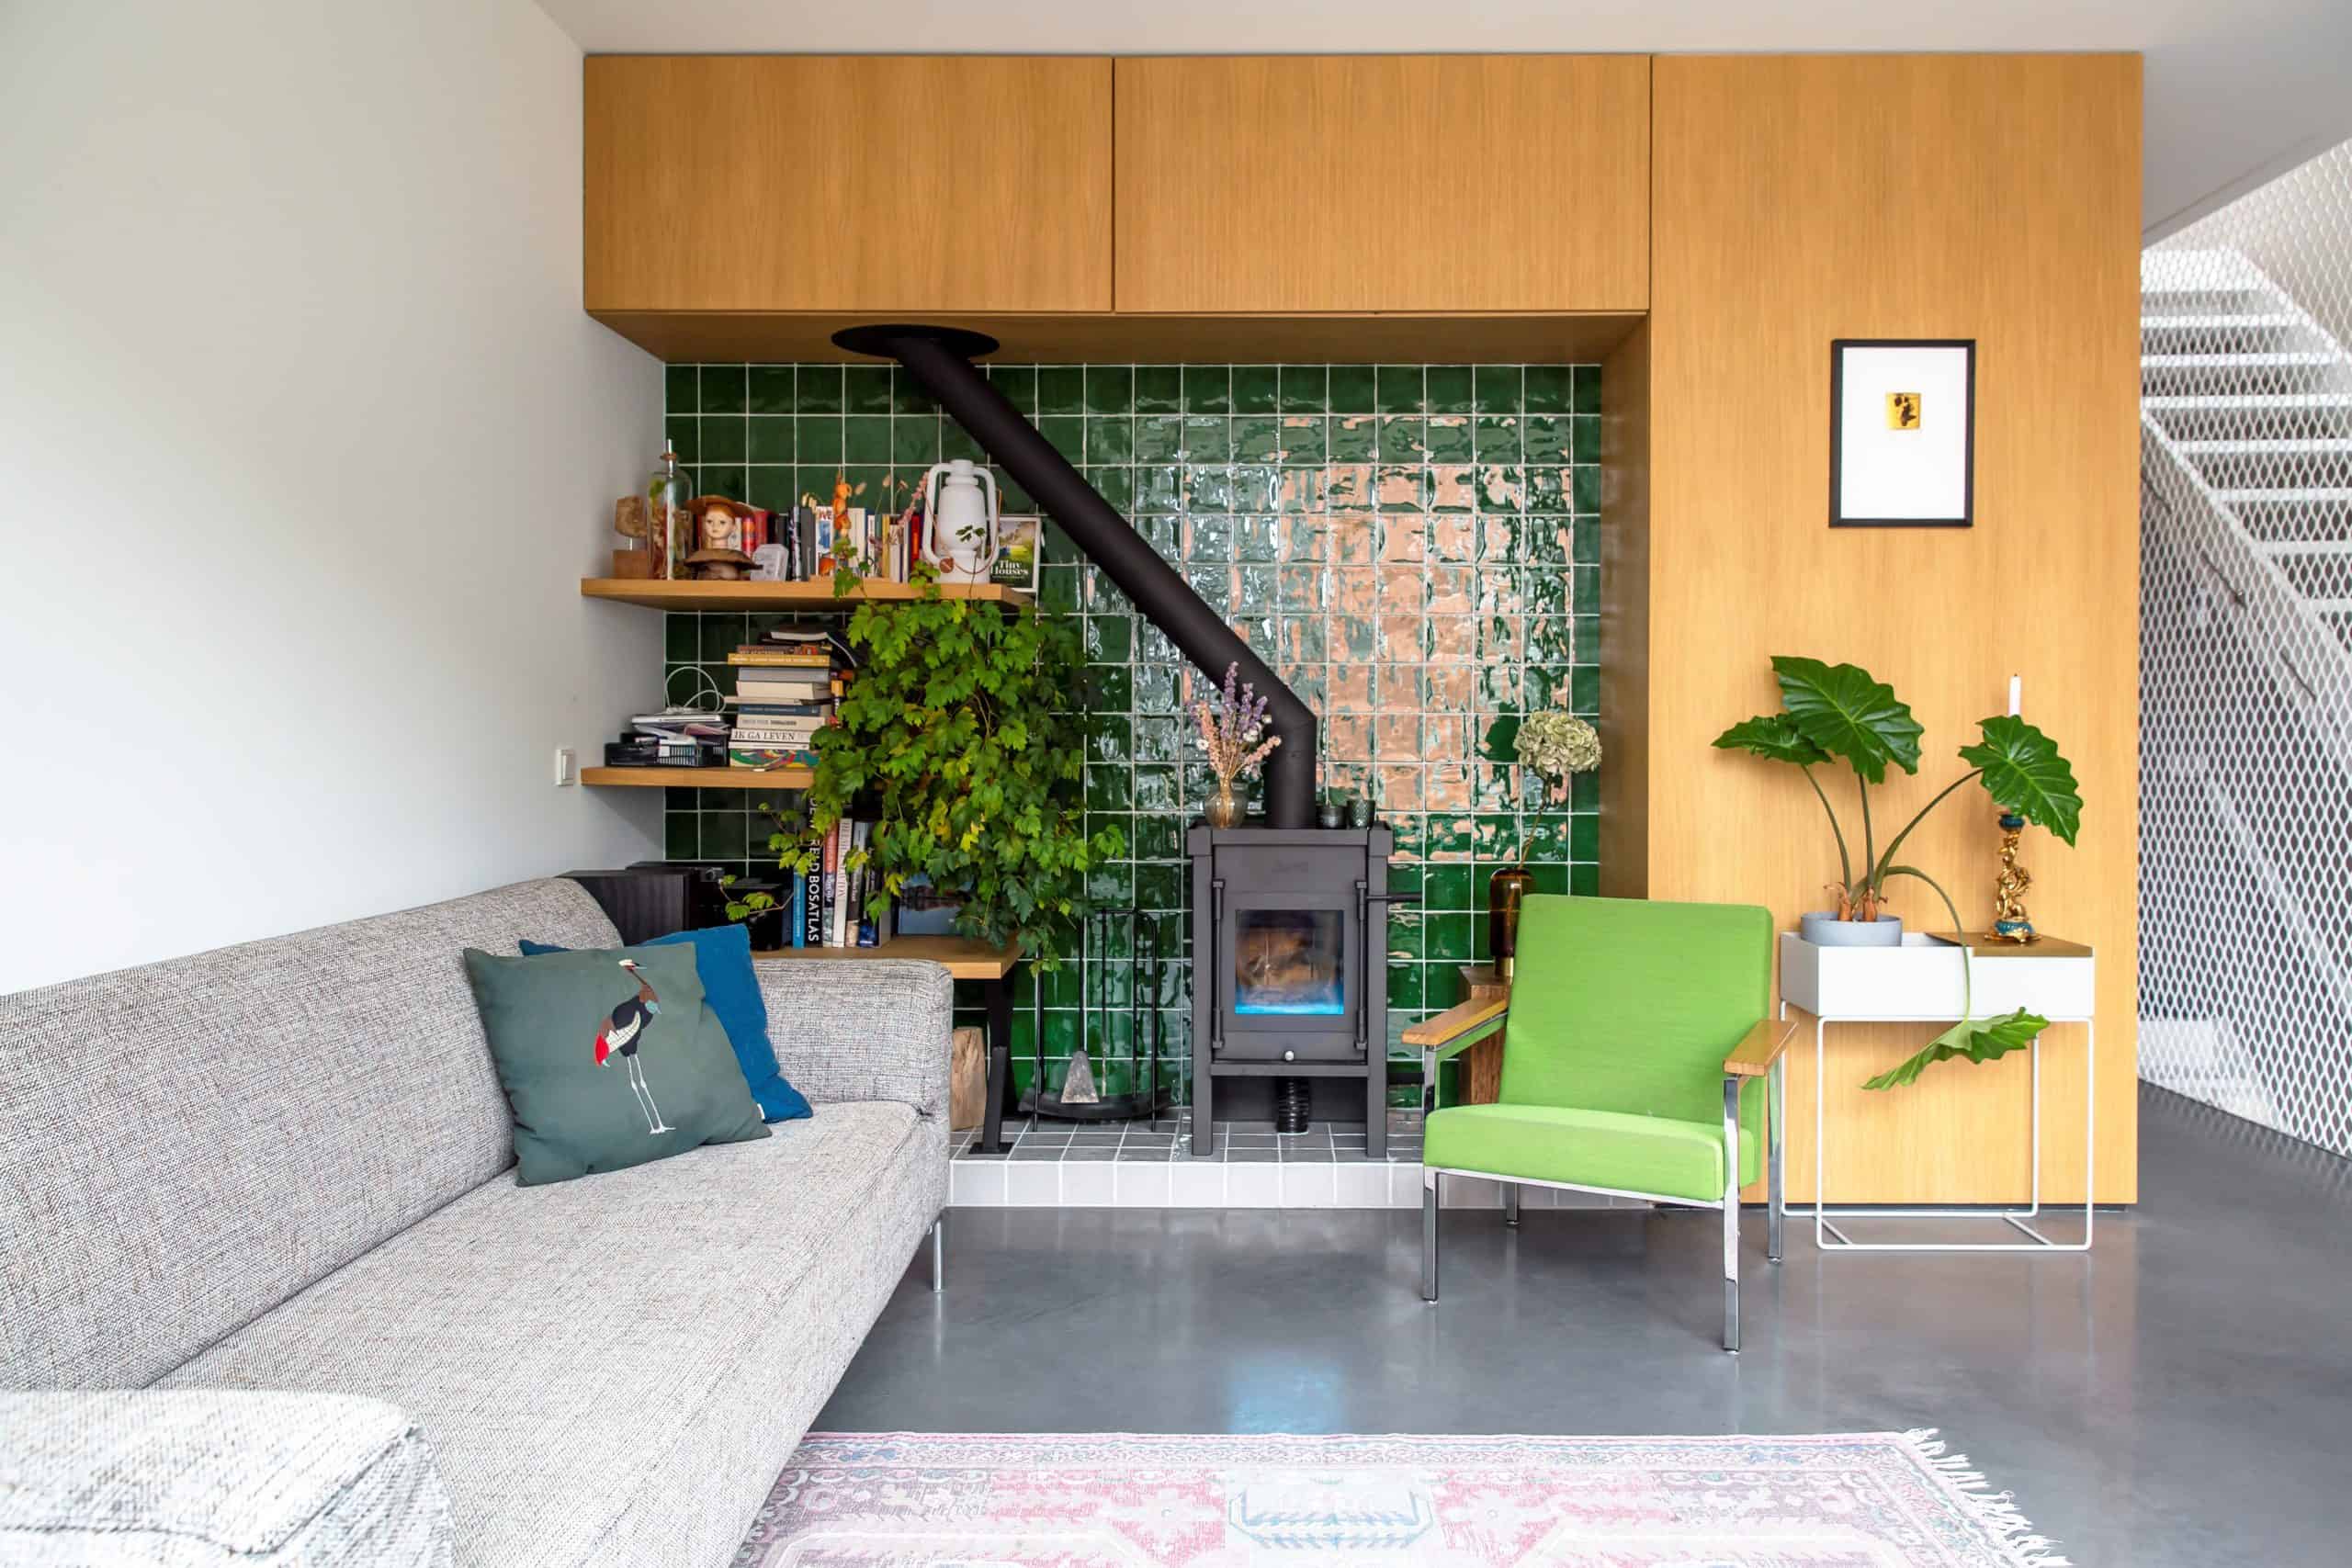 Woonkamer in Amsterdam met een grijze bank. groene stoel en een groene muur. Op de grond ligt een kleed over een gevlinderde woonbetonvloer.